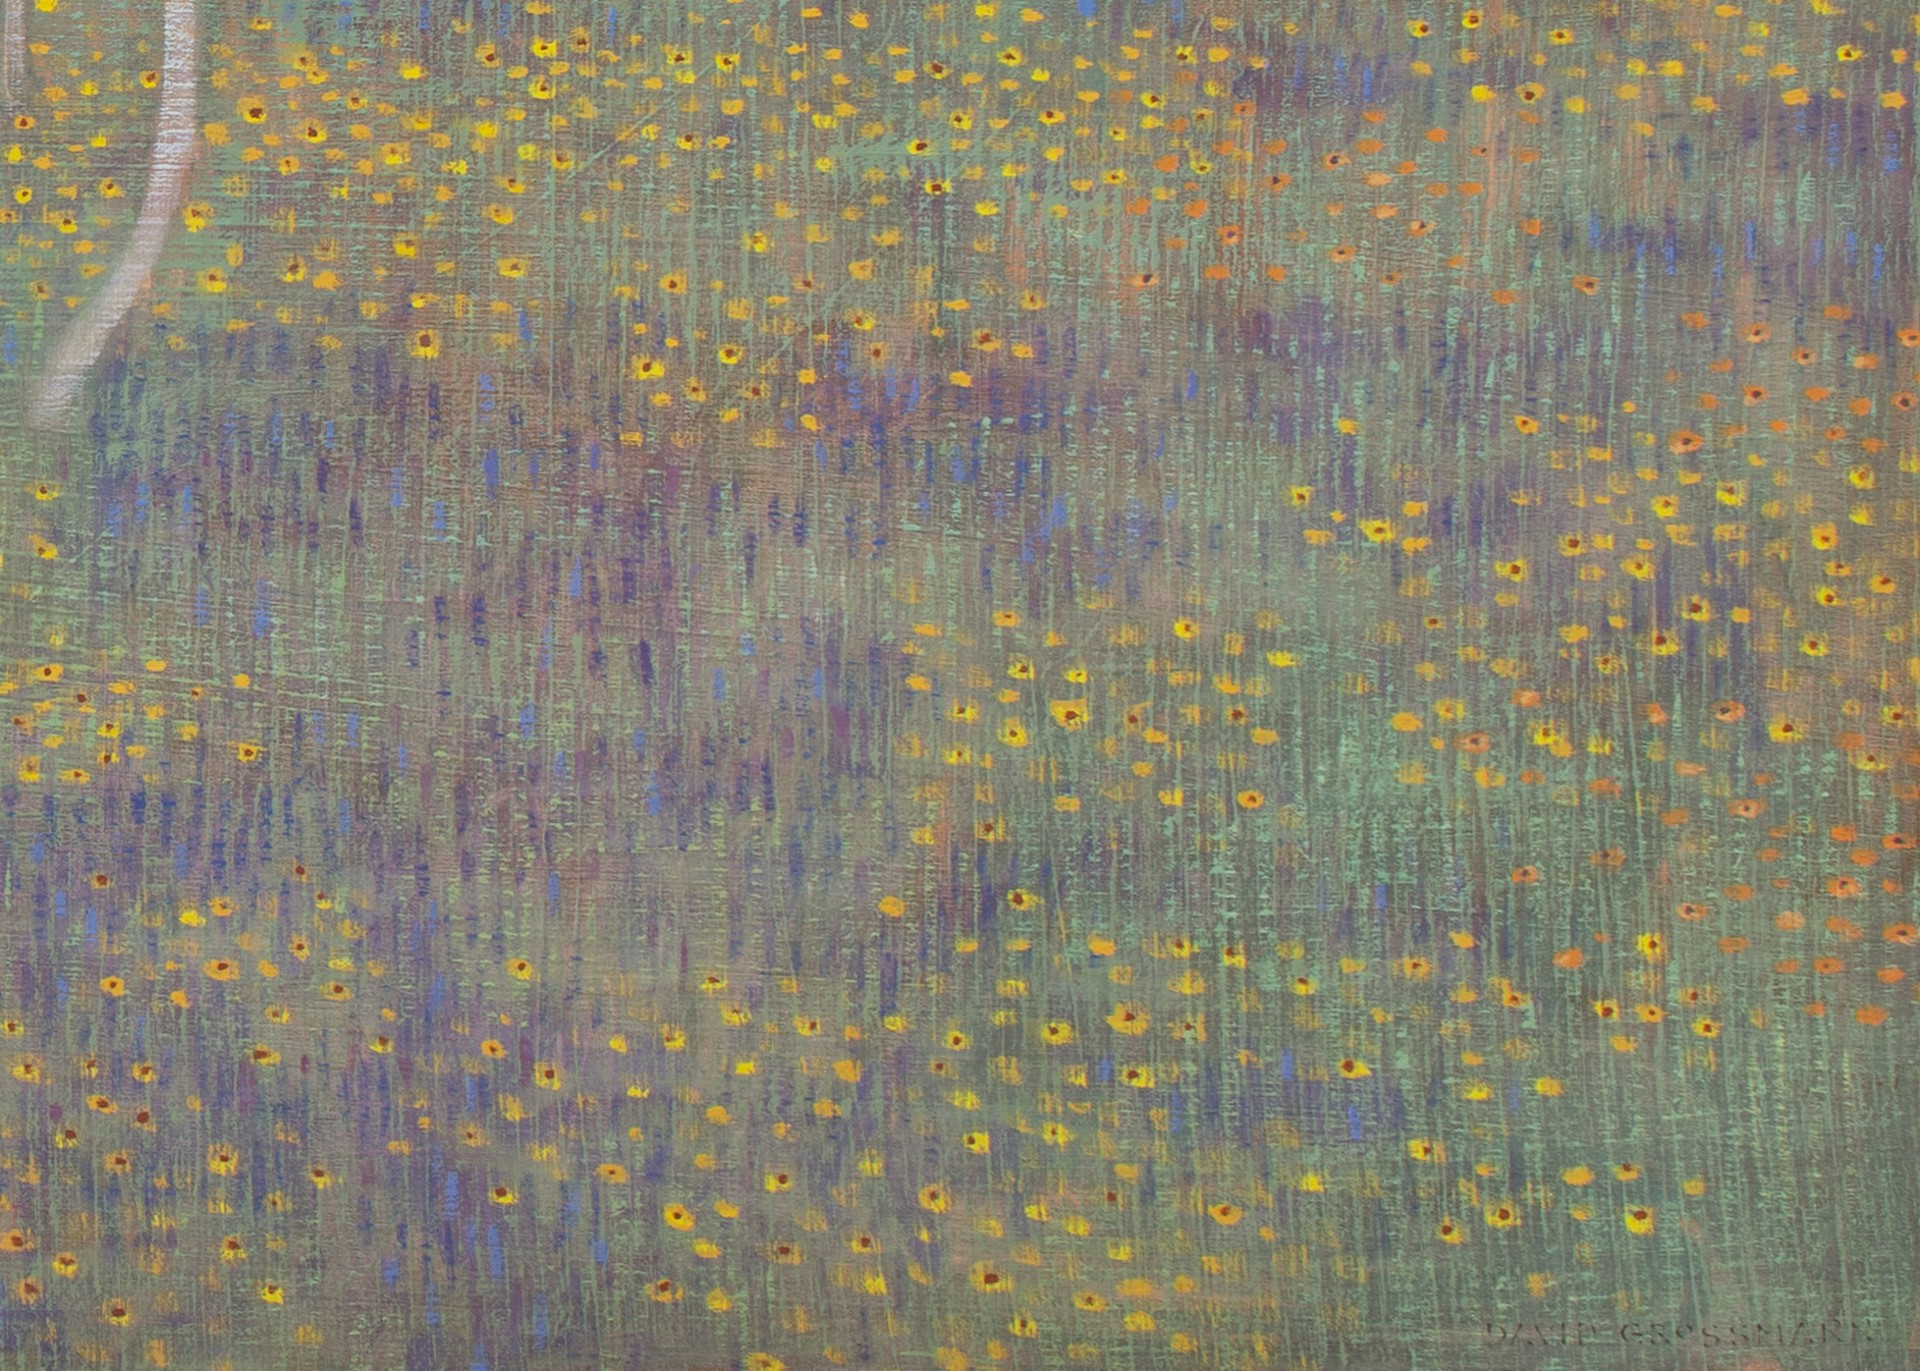 Dusk in the Wildflower Meadow by David Grossmann